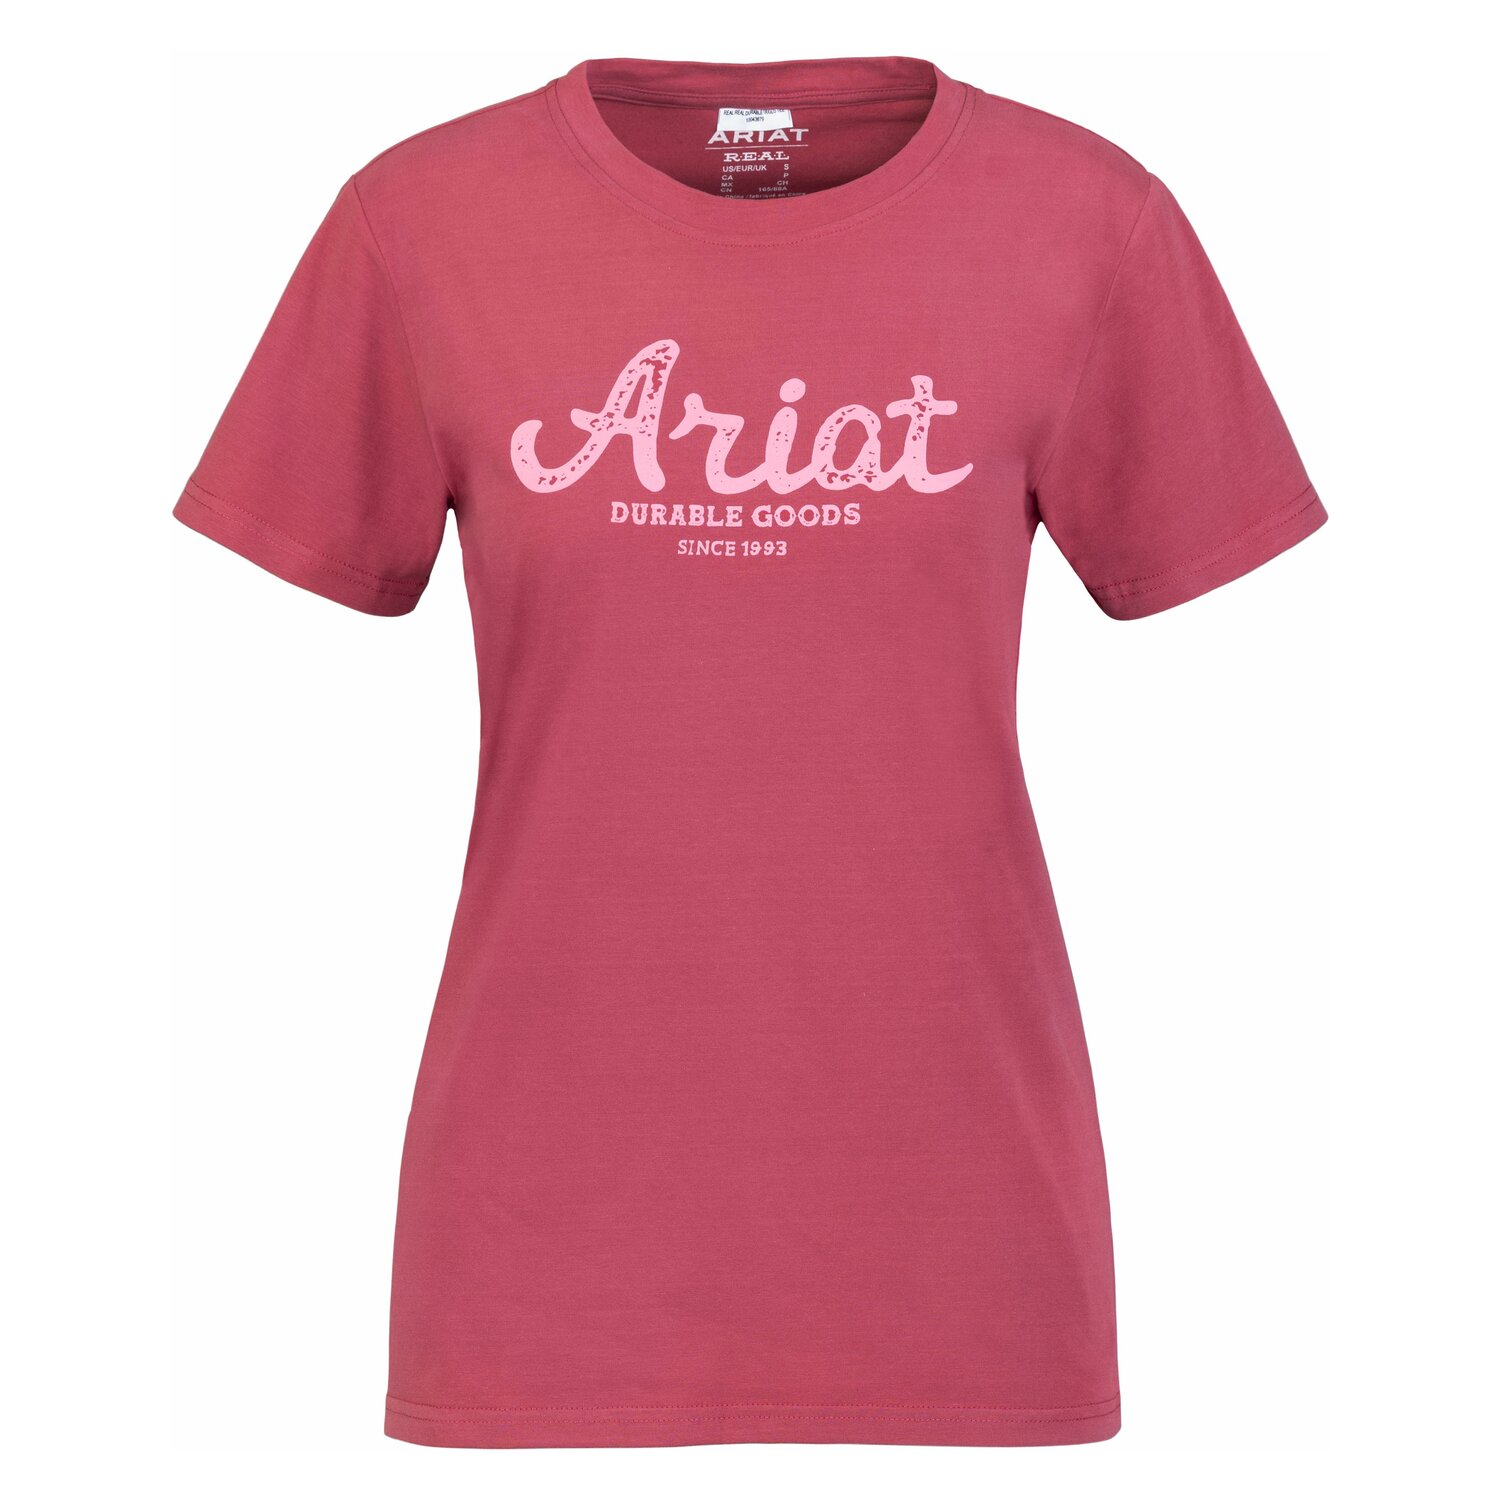 ARIAT T-Shirt WMS R.E.A.L. Durable Goods Tee 